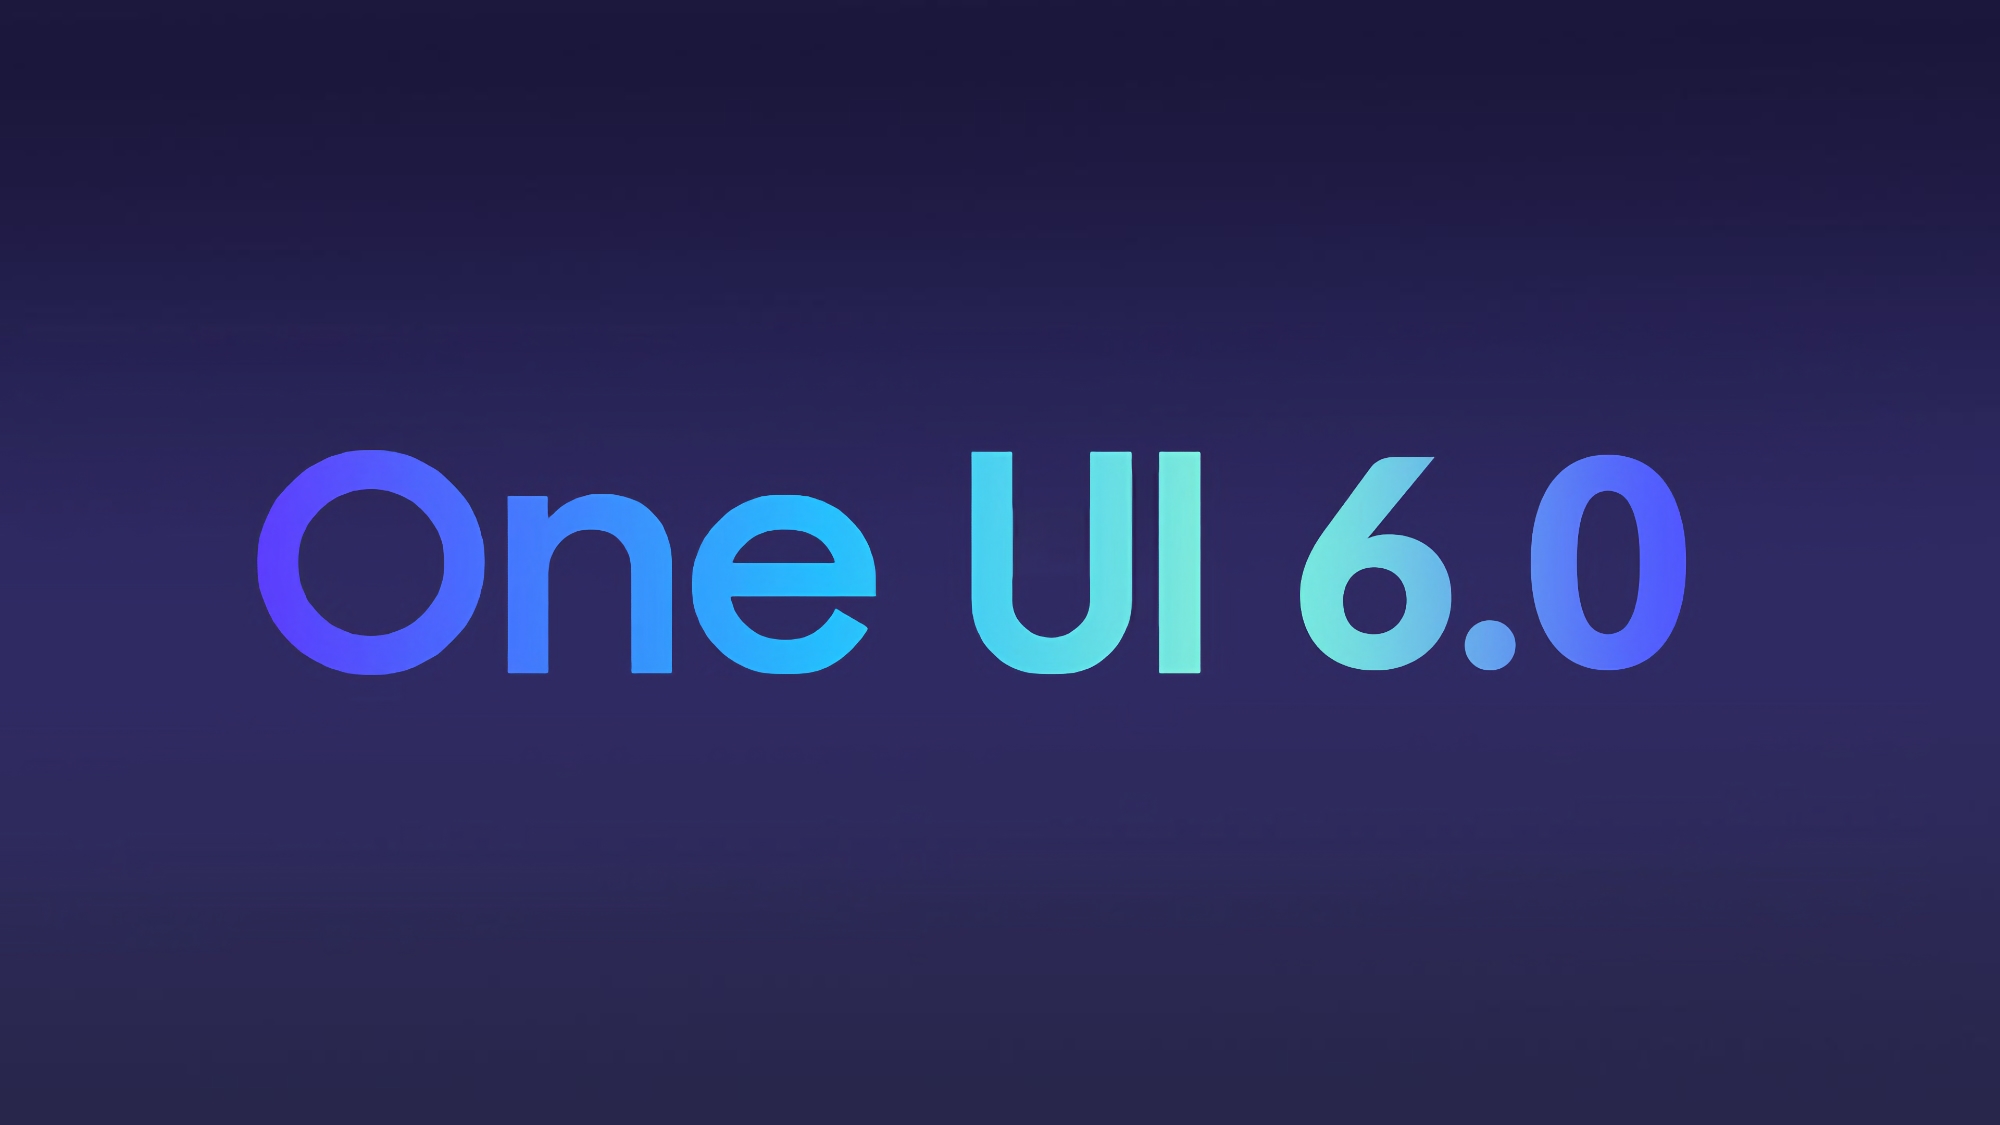 Samsung ha revelado cuándo se lanzará la beta de One UI 6.0 basada en Android 14 y qué smartphones la recibirán primero